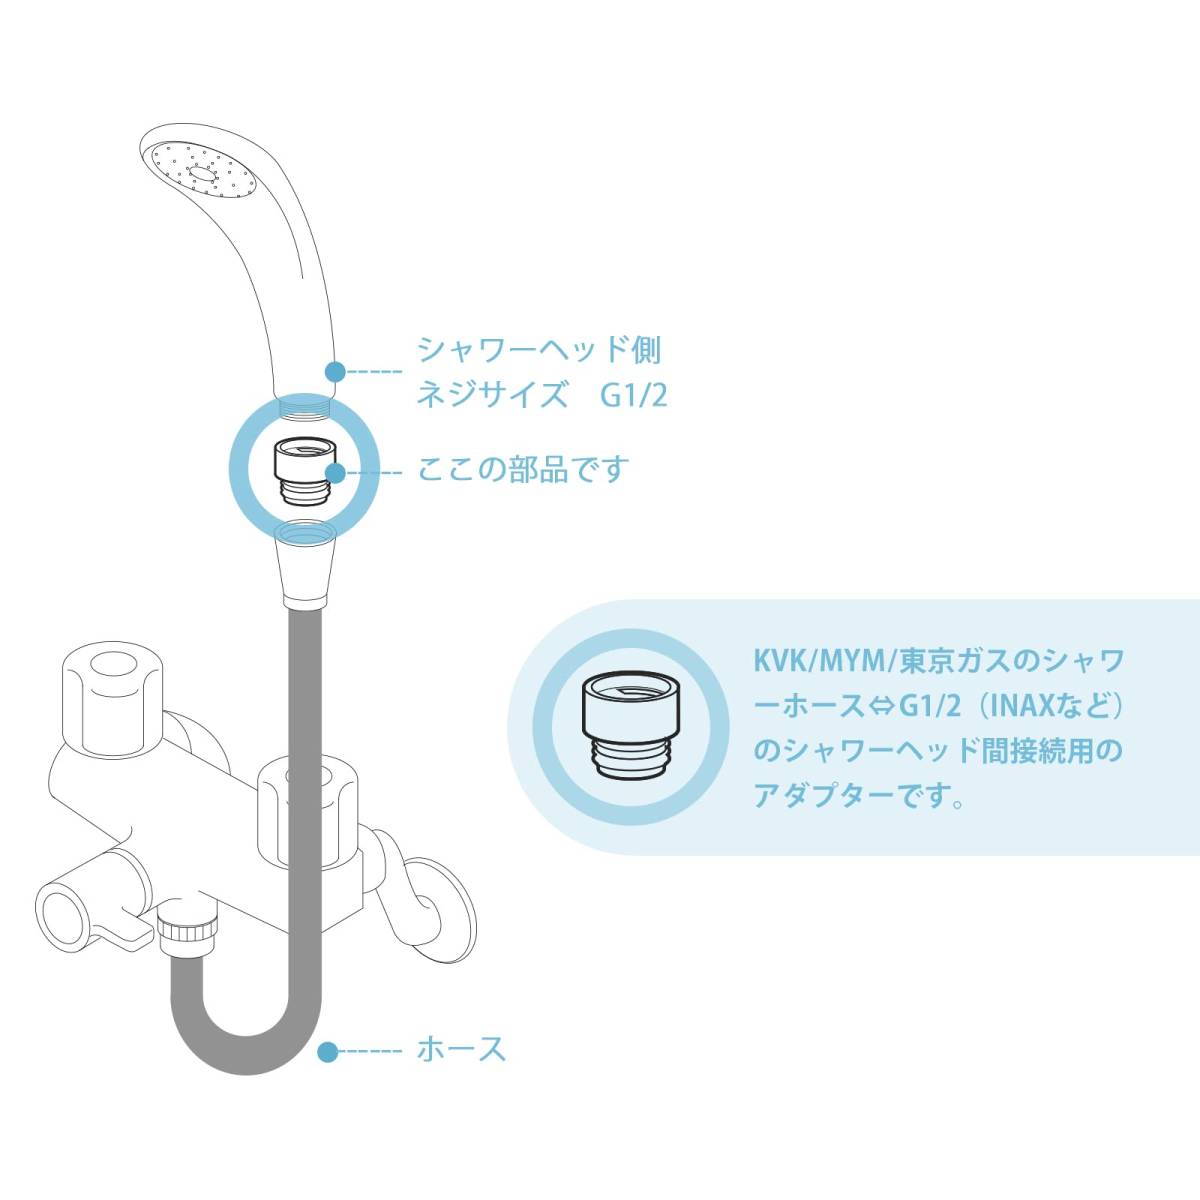 【ホワイト】シャワーヘッド用アダプターセット 4個セット KVK/MYM/東京ガスシャワーホースとシャワーヘッド間のアダプター 取付簡単_画像2